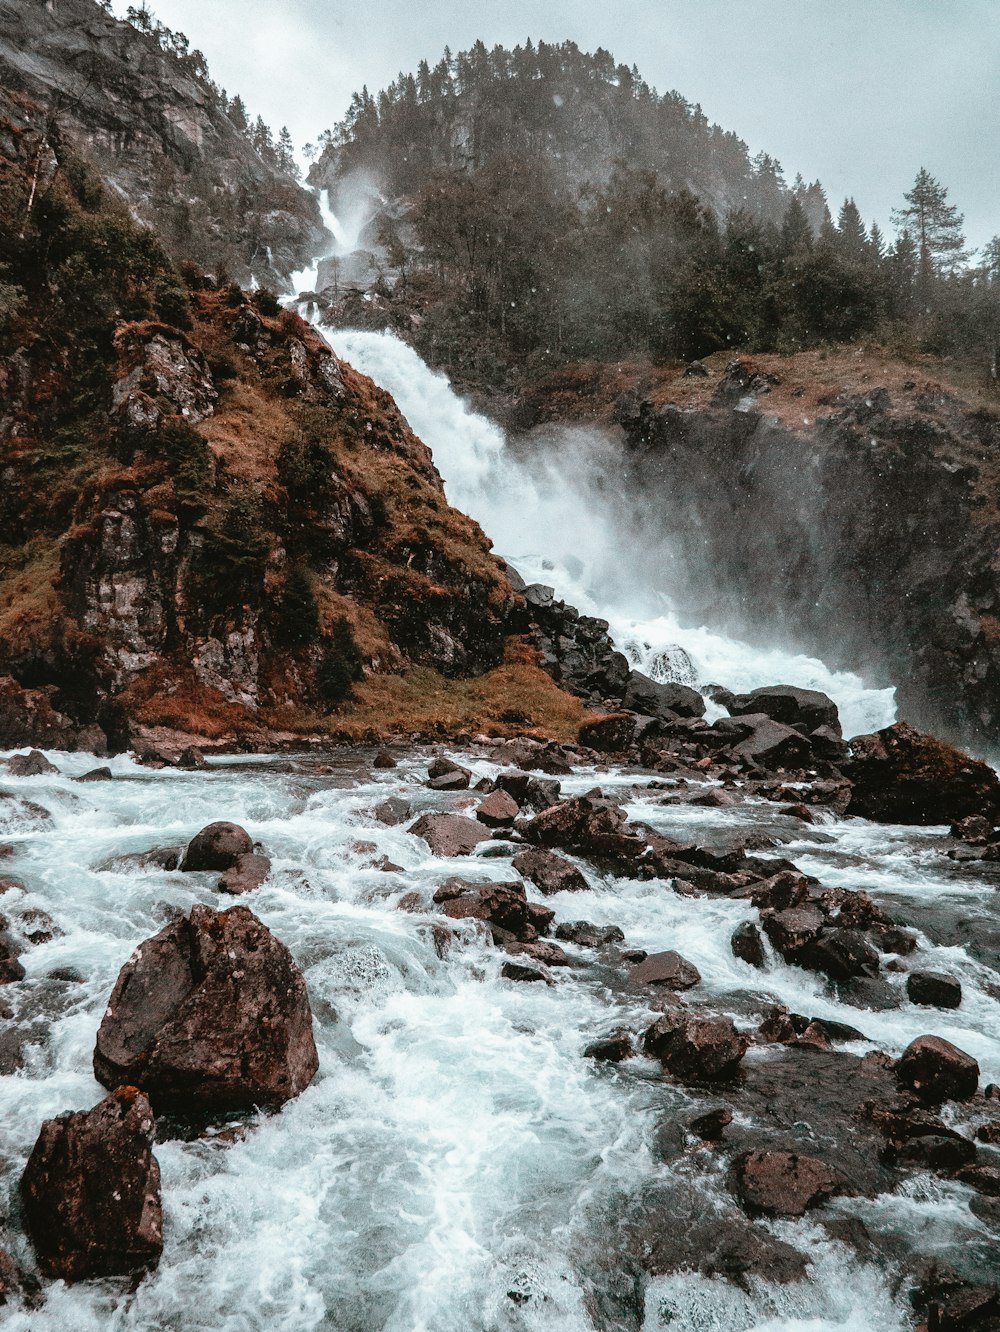 waterfalls between rocks at daytime